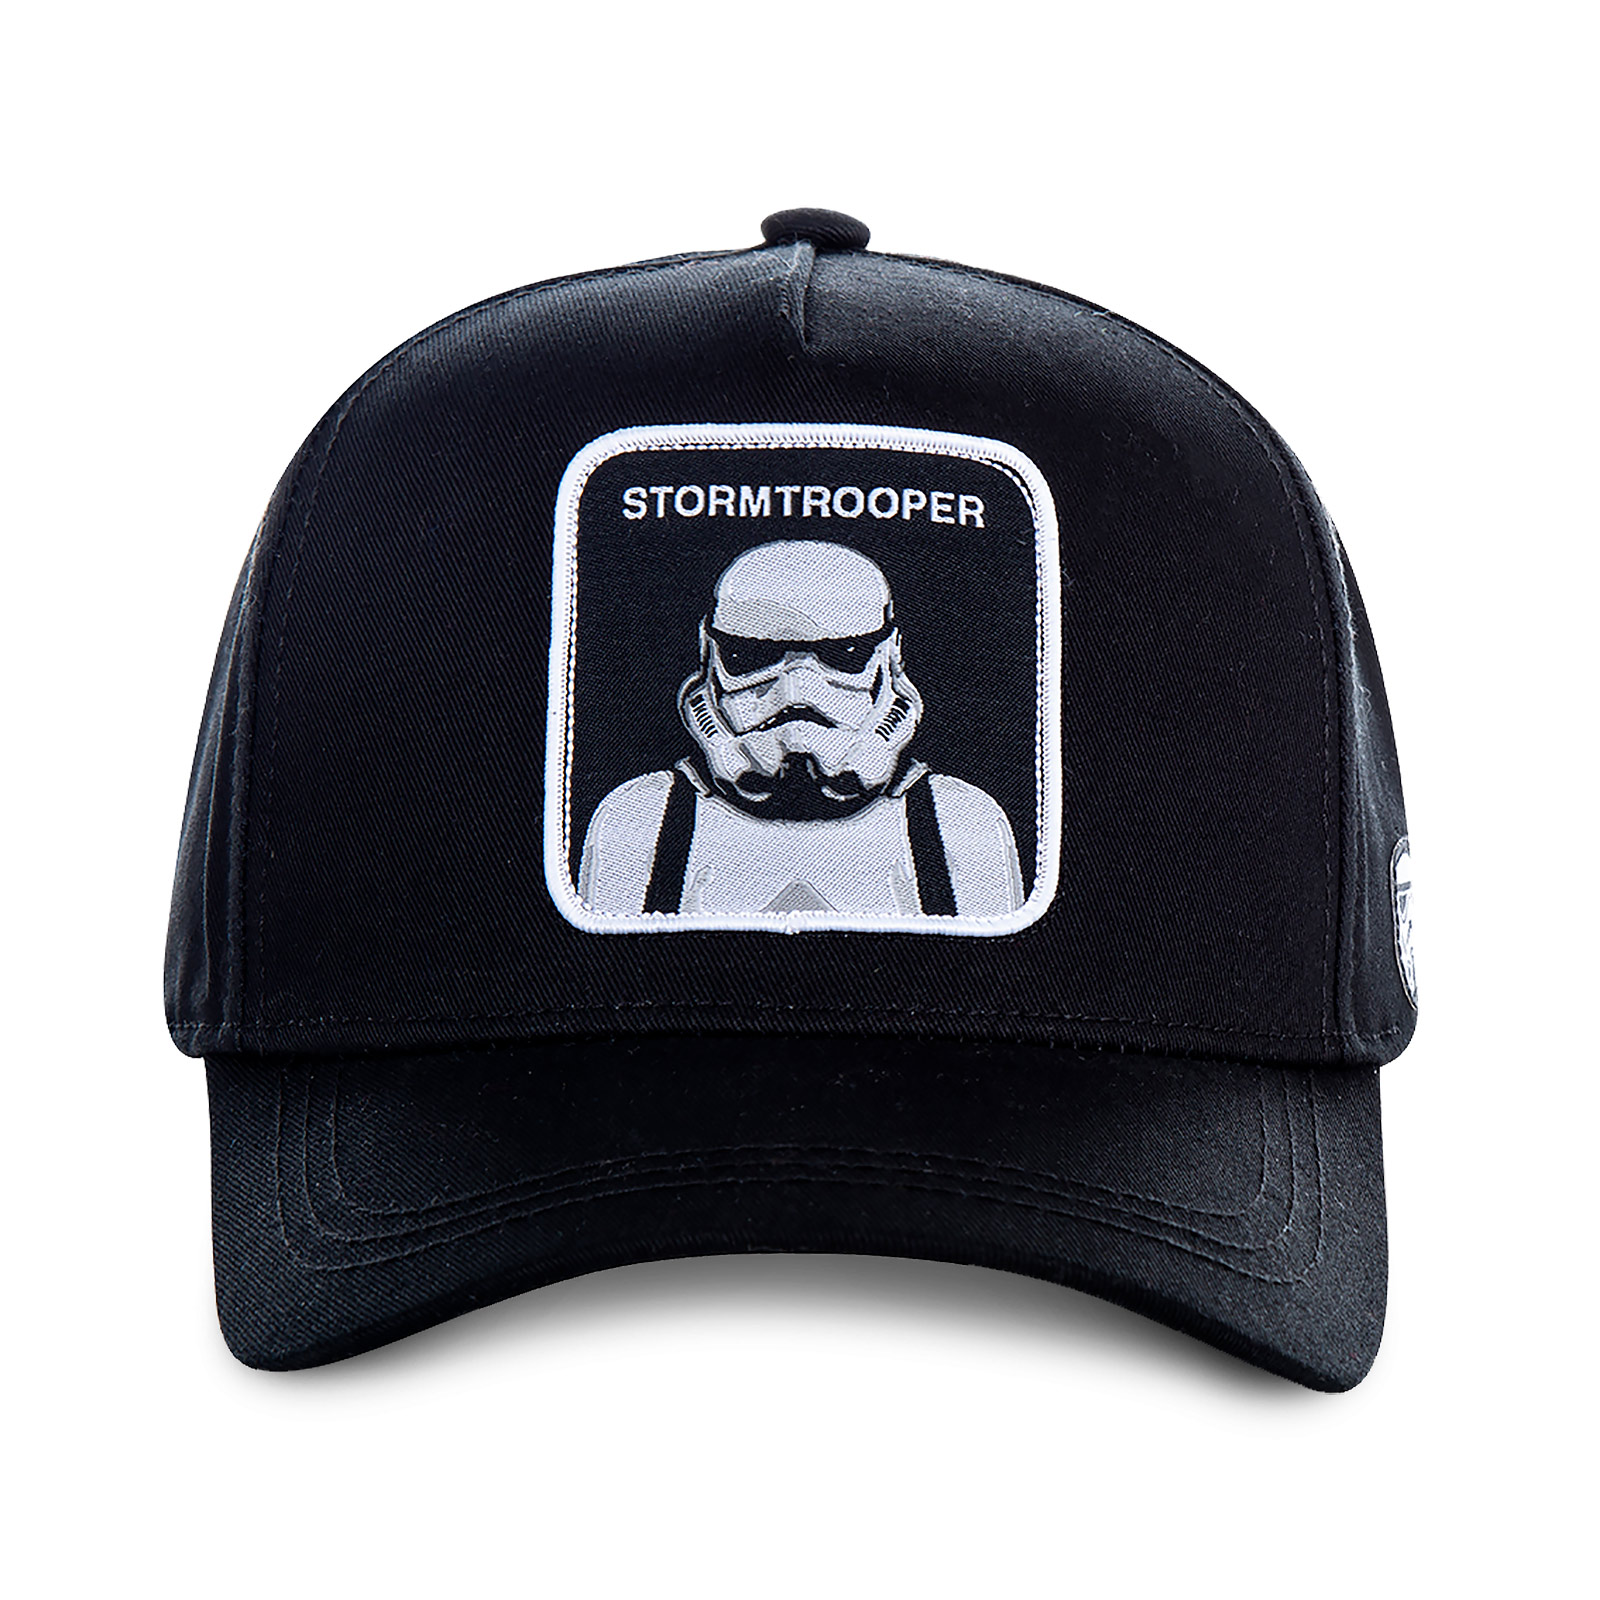 Casquette de baseball Stormtrooper Capslab noir - Star Wars